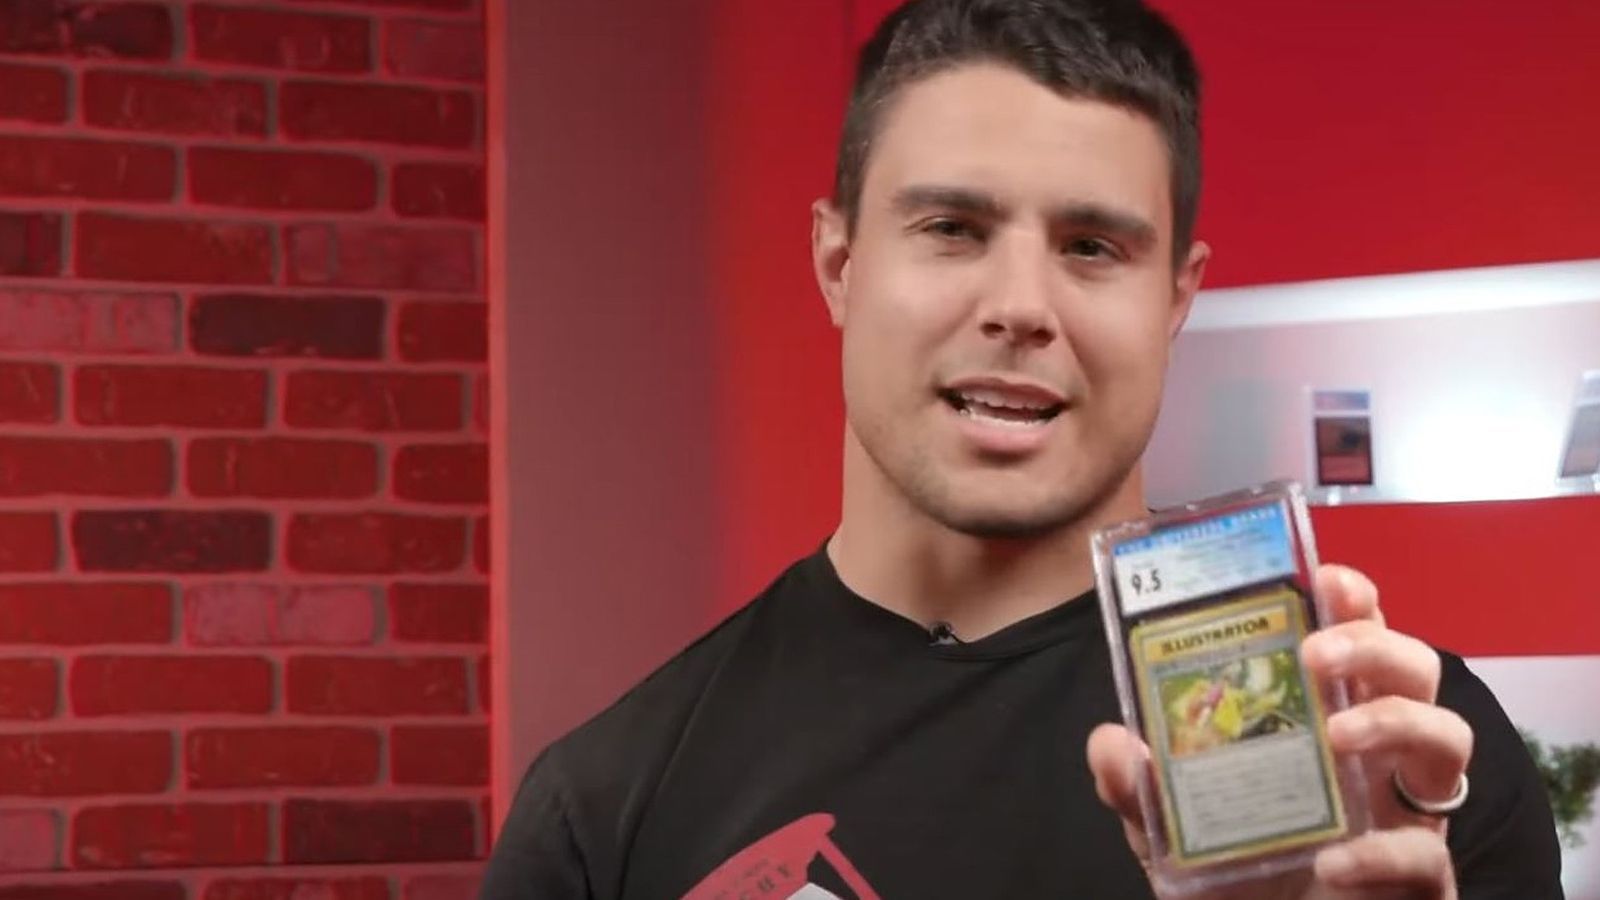 
                <strong>Reich dank Glurak</strong><br>
                Pokemon-Meister Blake Martinez verdient weitere sieben Millionen durch Kartenverkäufe, weil er auf dem Dachboden seines Elternhauses ein Schimmerndes Glurak entdeckt.
              